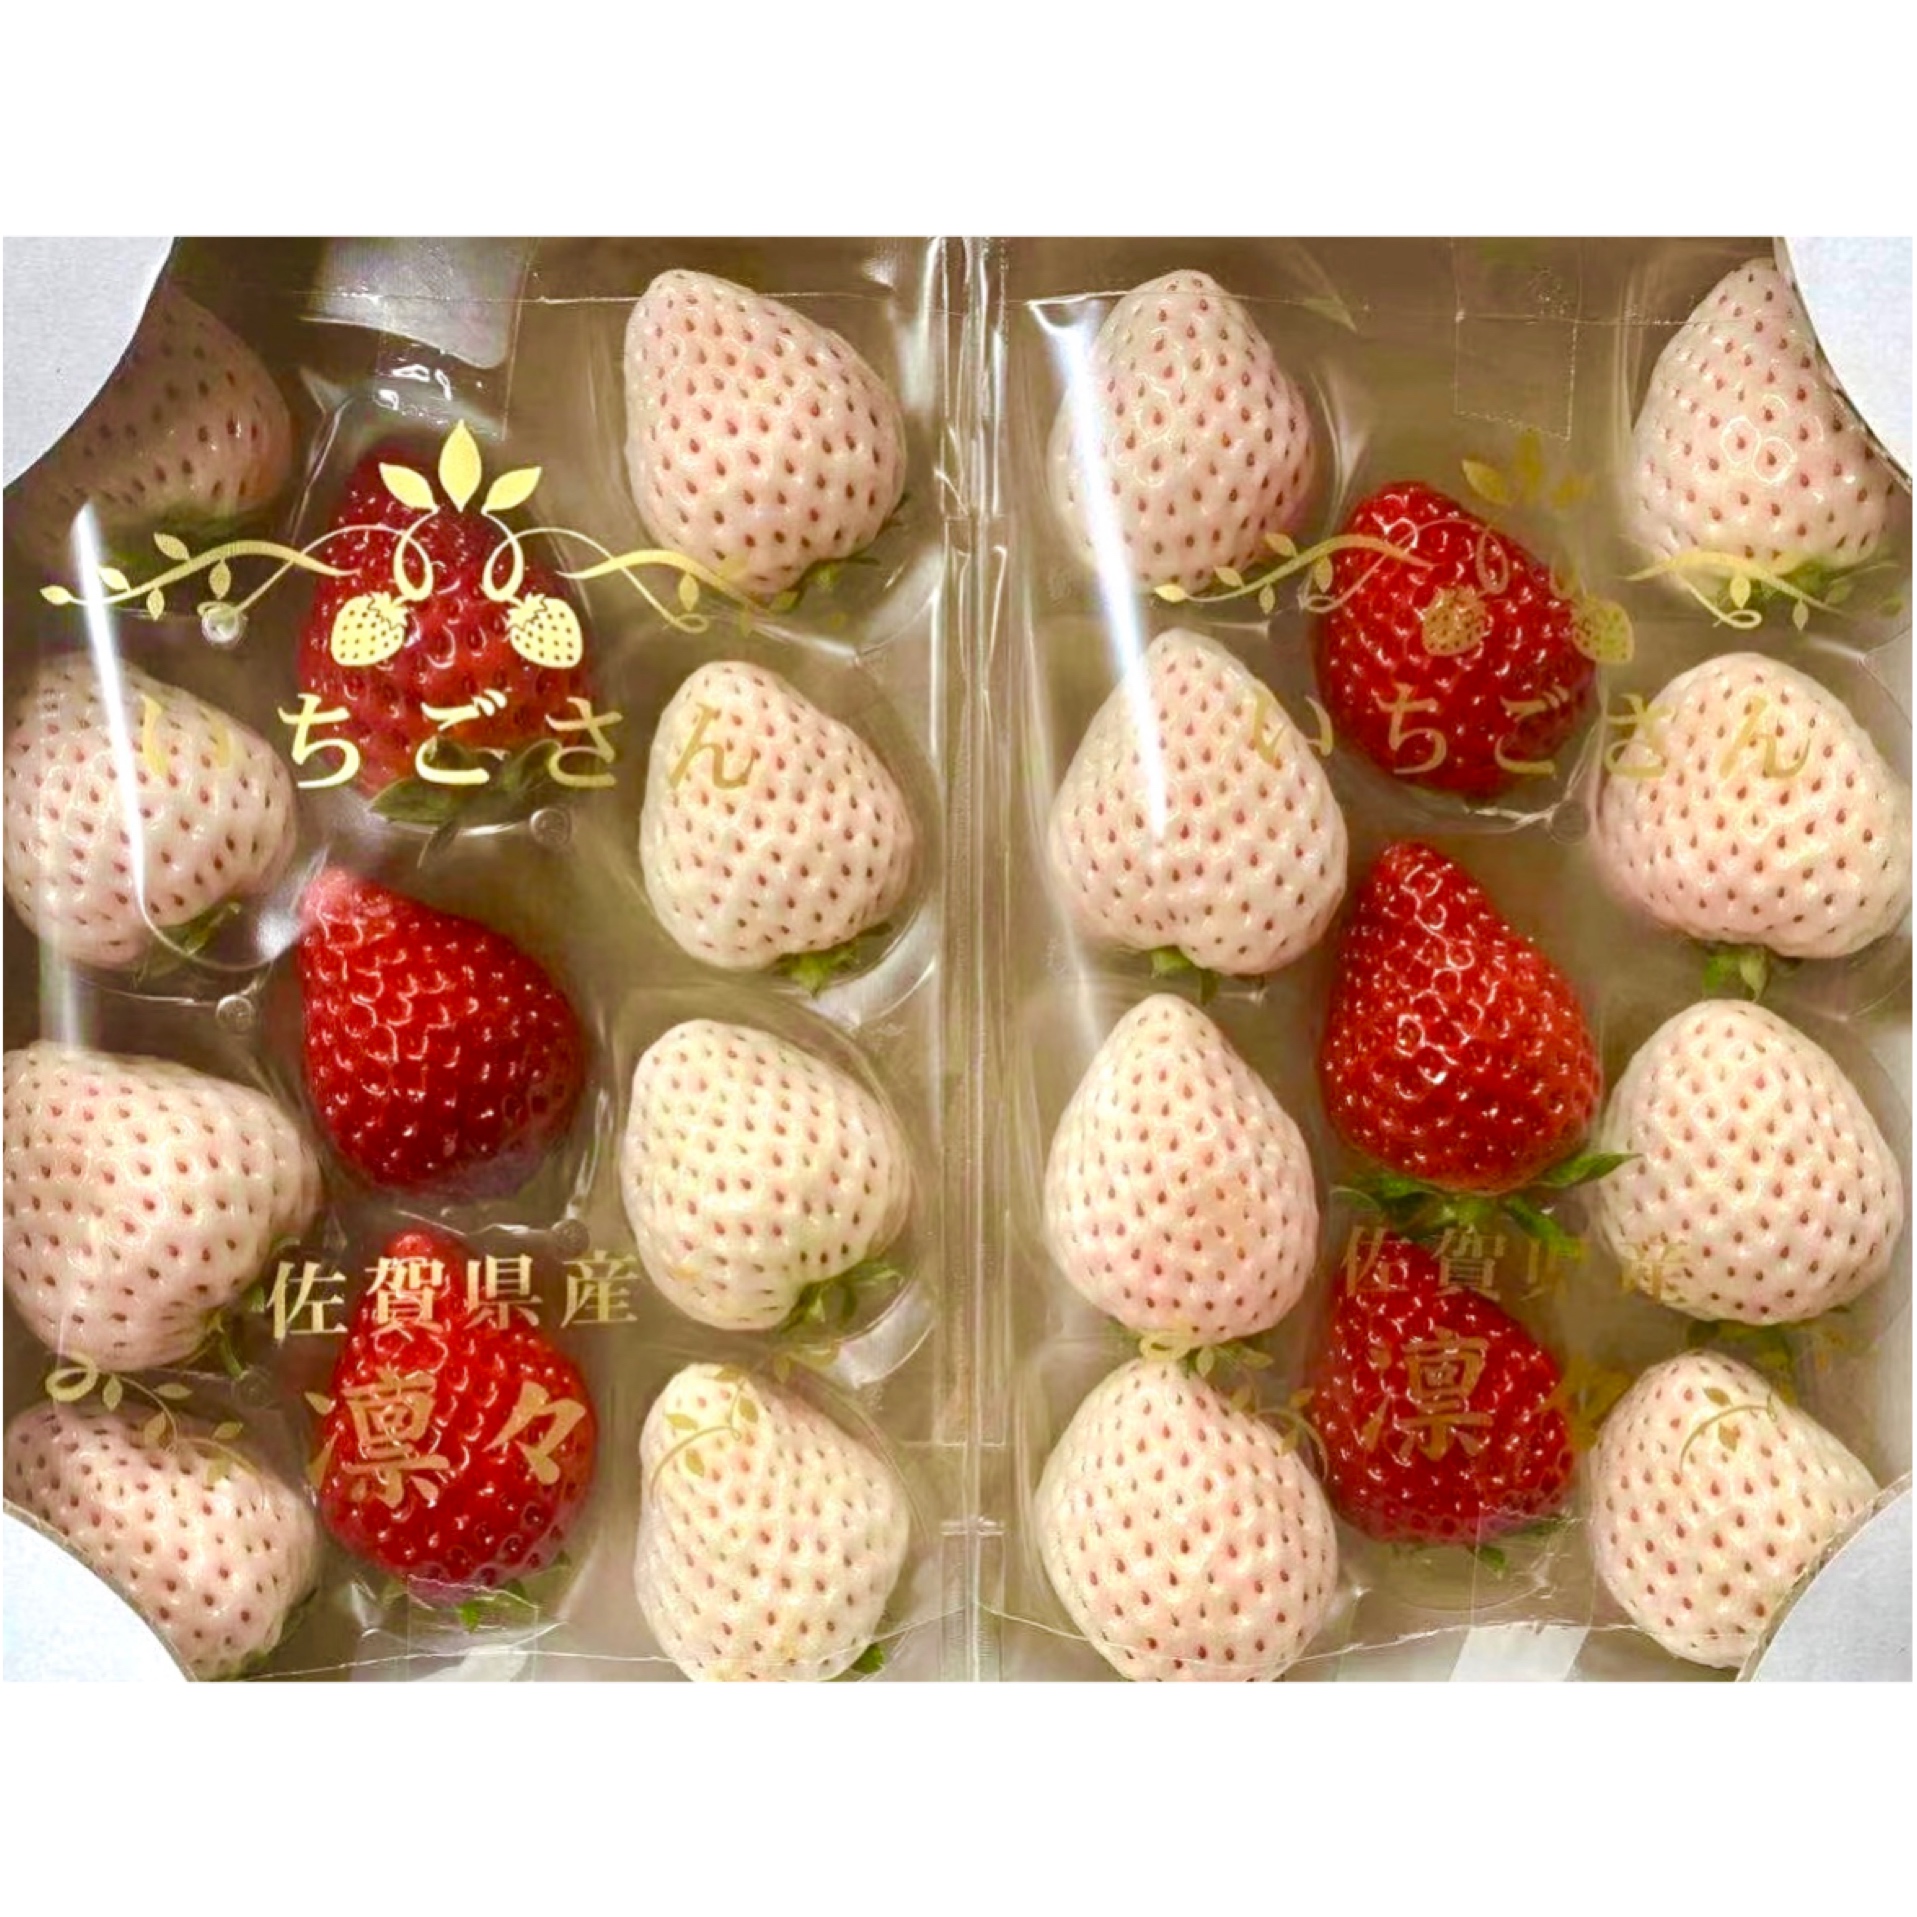 日本草莓 双色 箱装2盒